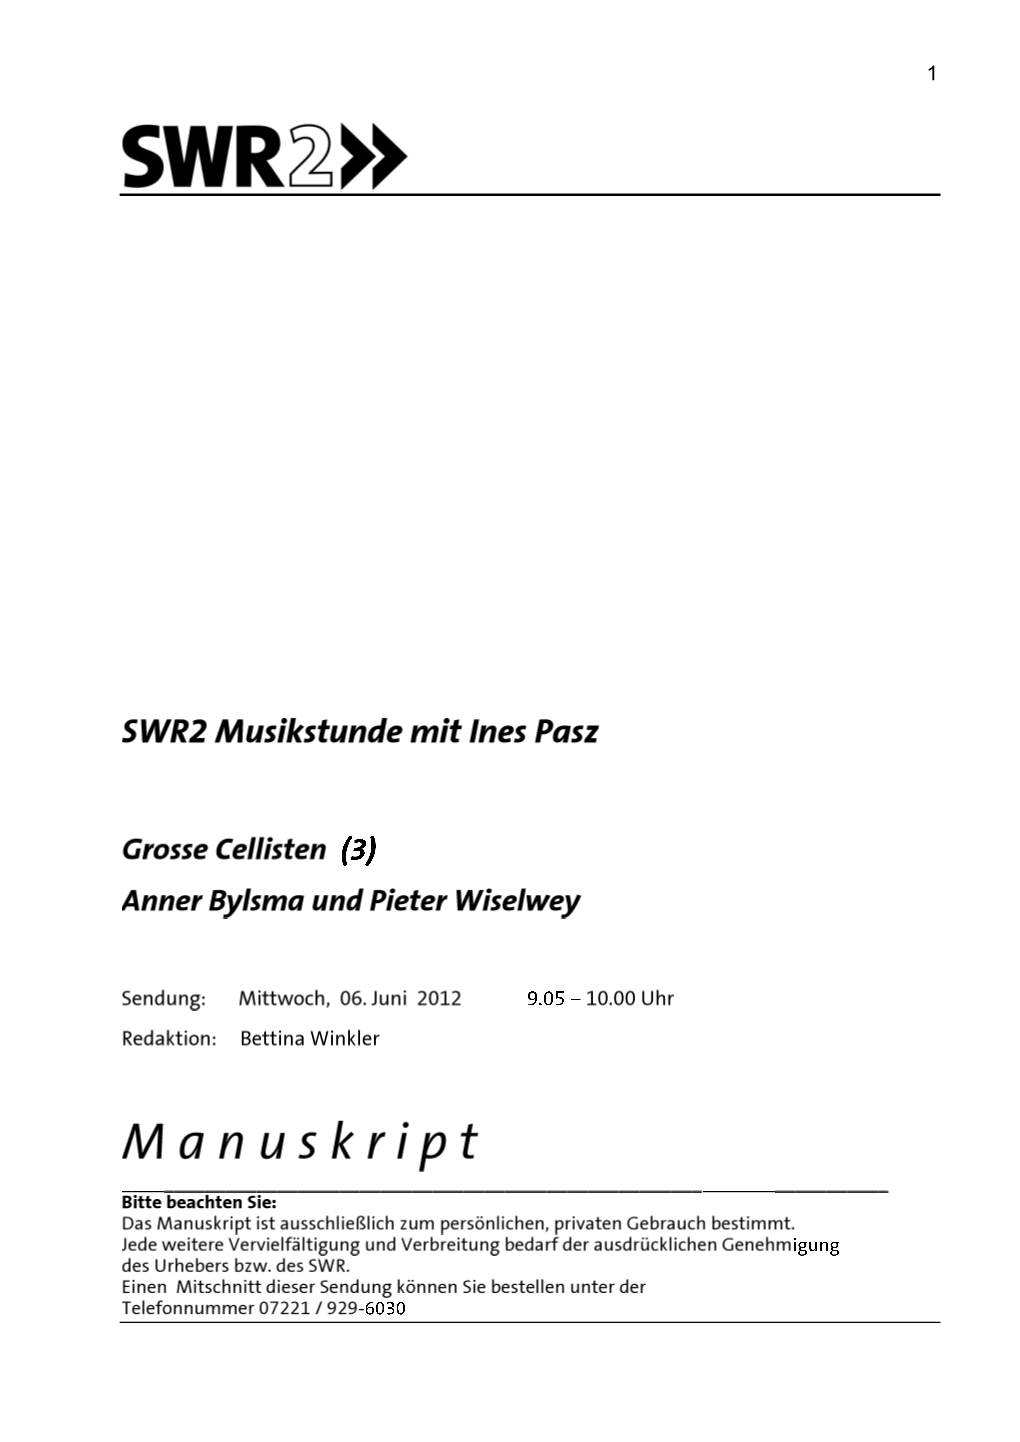 SWR2 Musikstunde Große Cellisten (3), 6.6.2012 Teil 3: Anner Bylsma Und Pieter Wiselwey